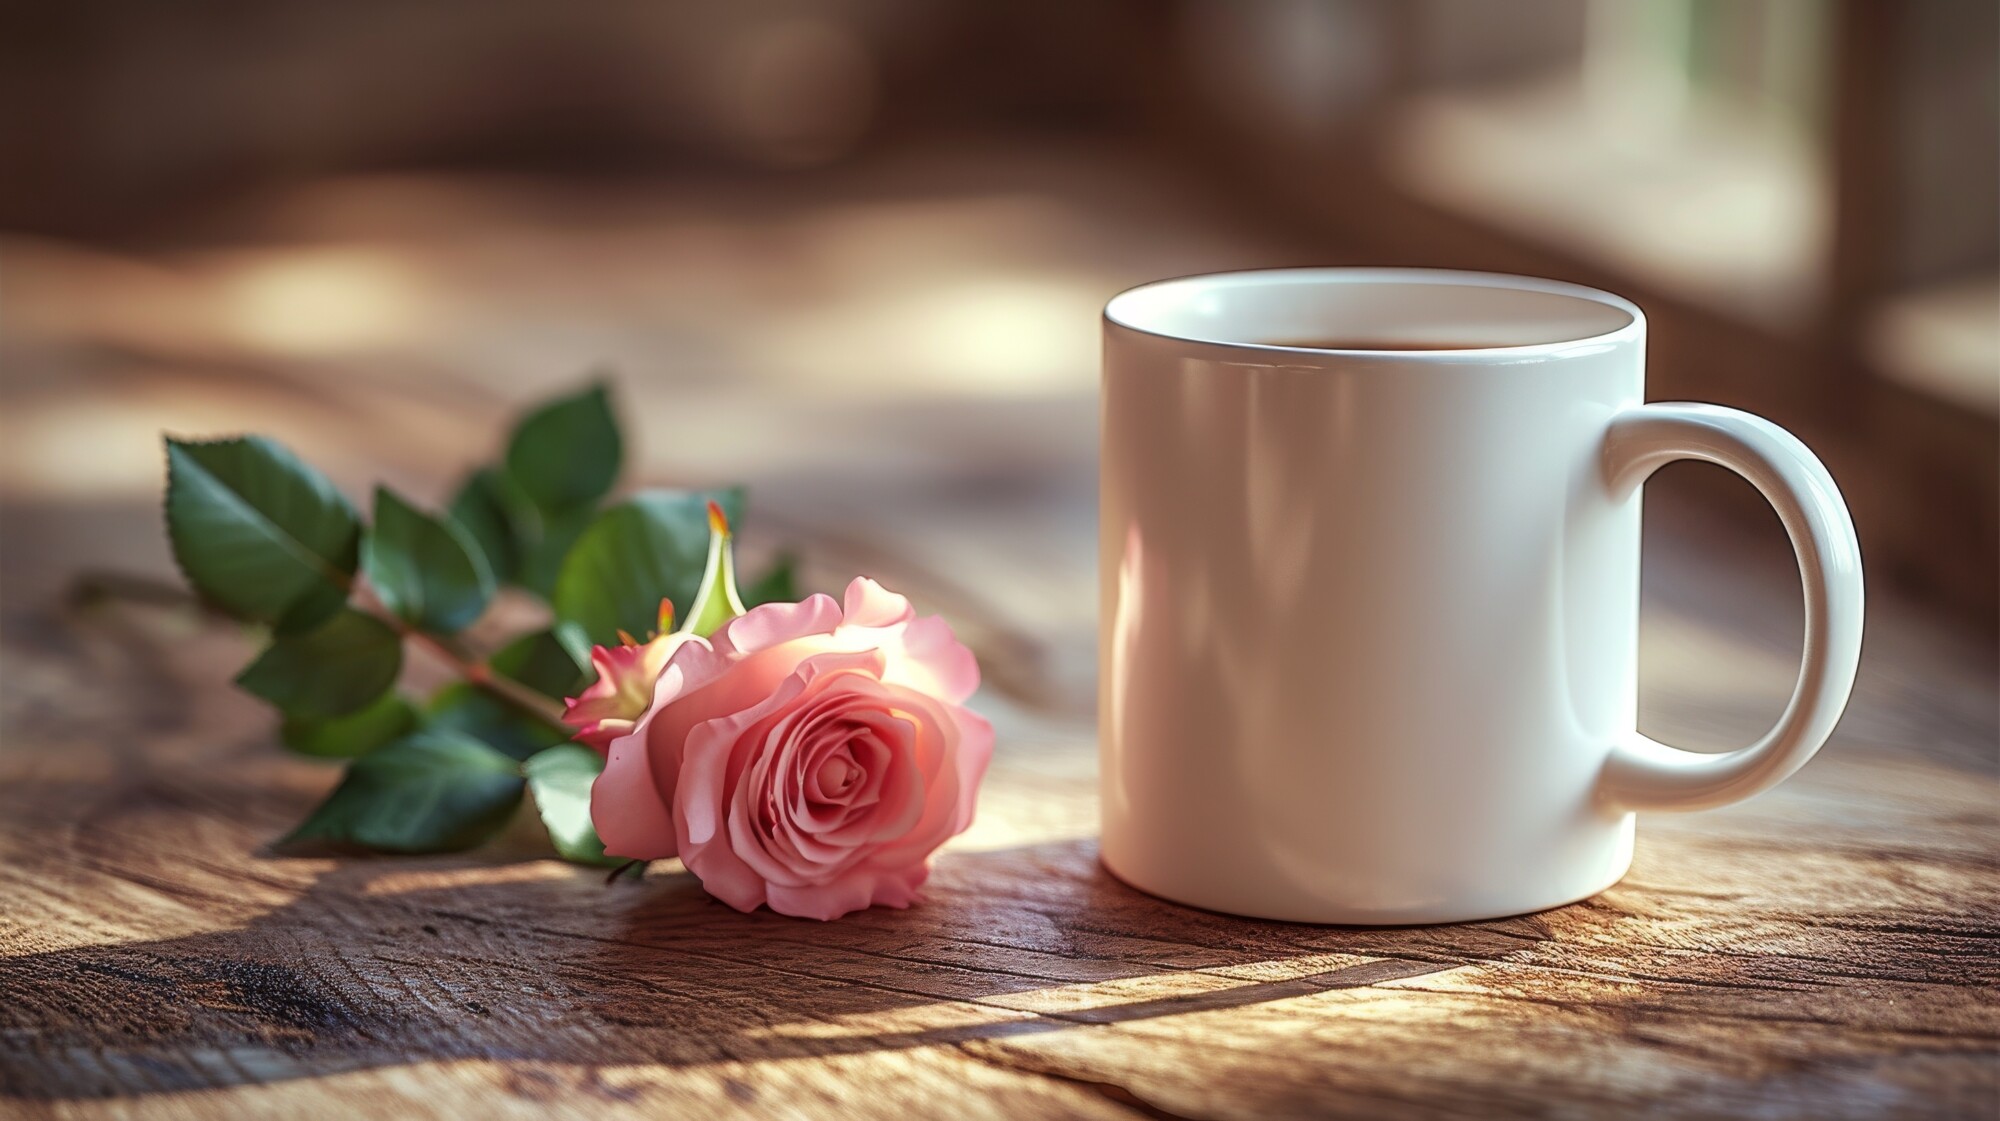 Rustiikkisella pöydällä vaaleanpunainen ruusu ja valkoinen kahvimuki.